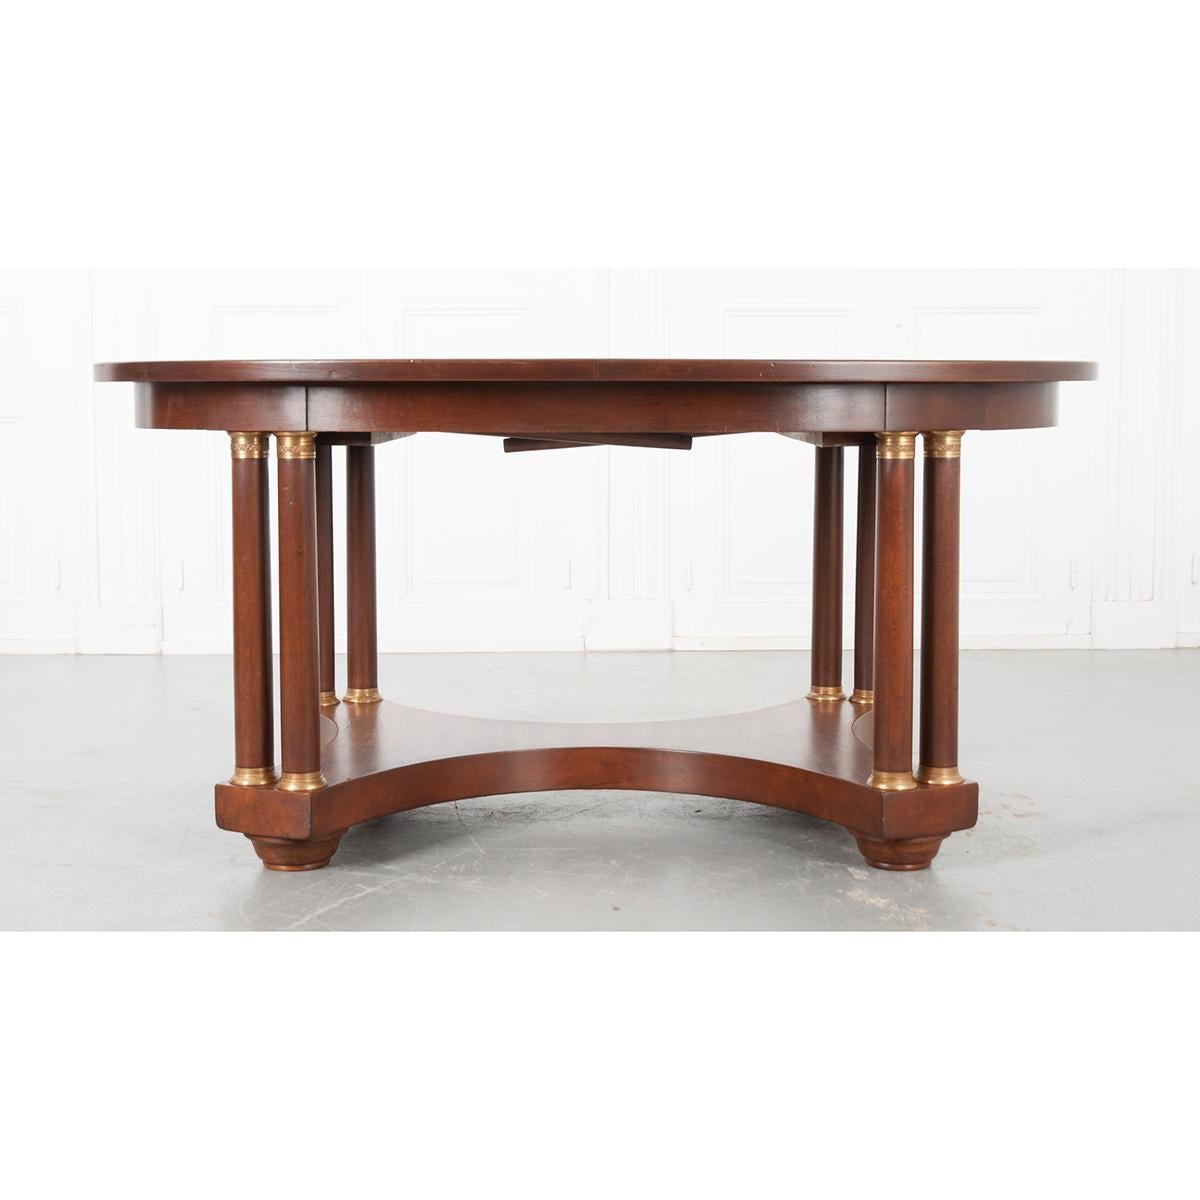 Dieser Tisch im Empire-Stil eignet sich perfekt als Esstisch oder als zentraler Tisch. Er kann auf eine Länge von 110